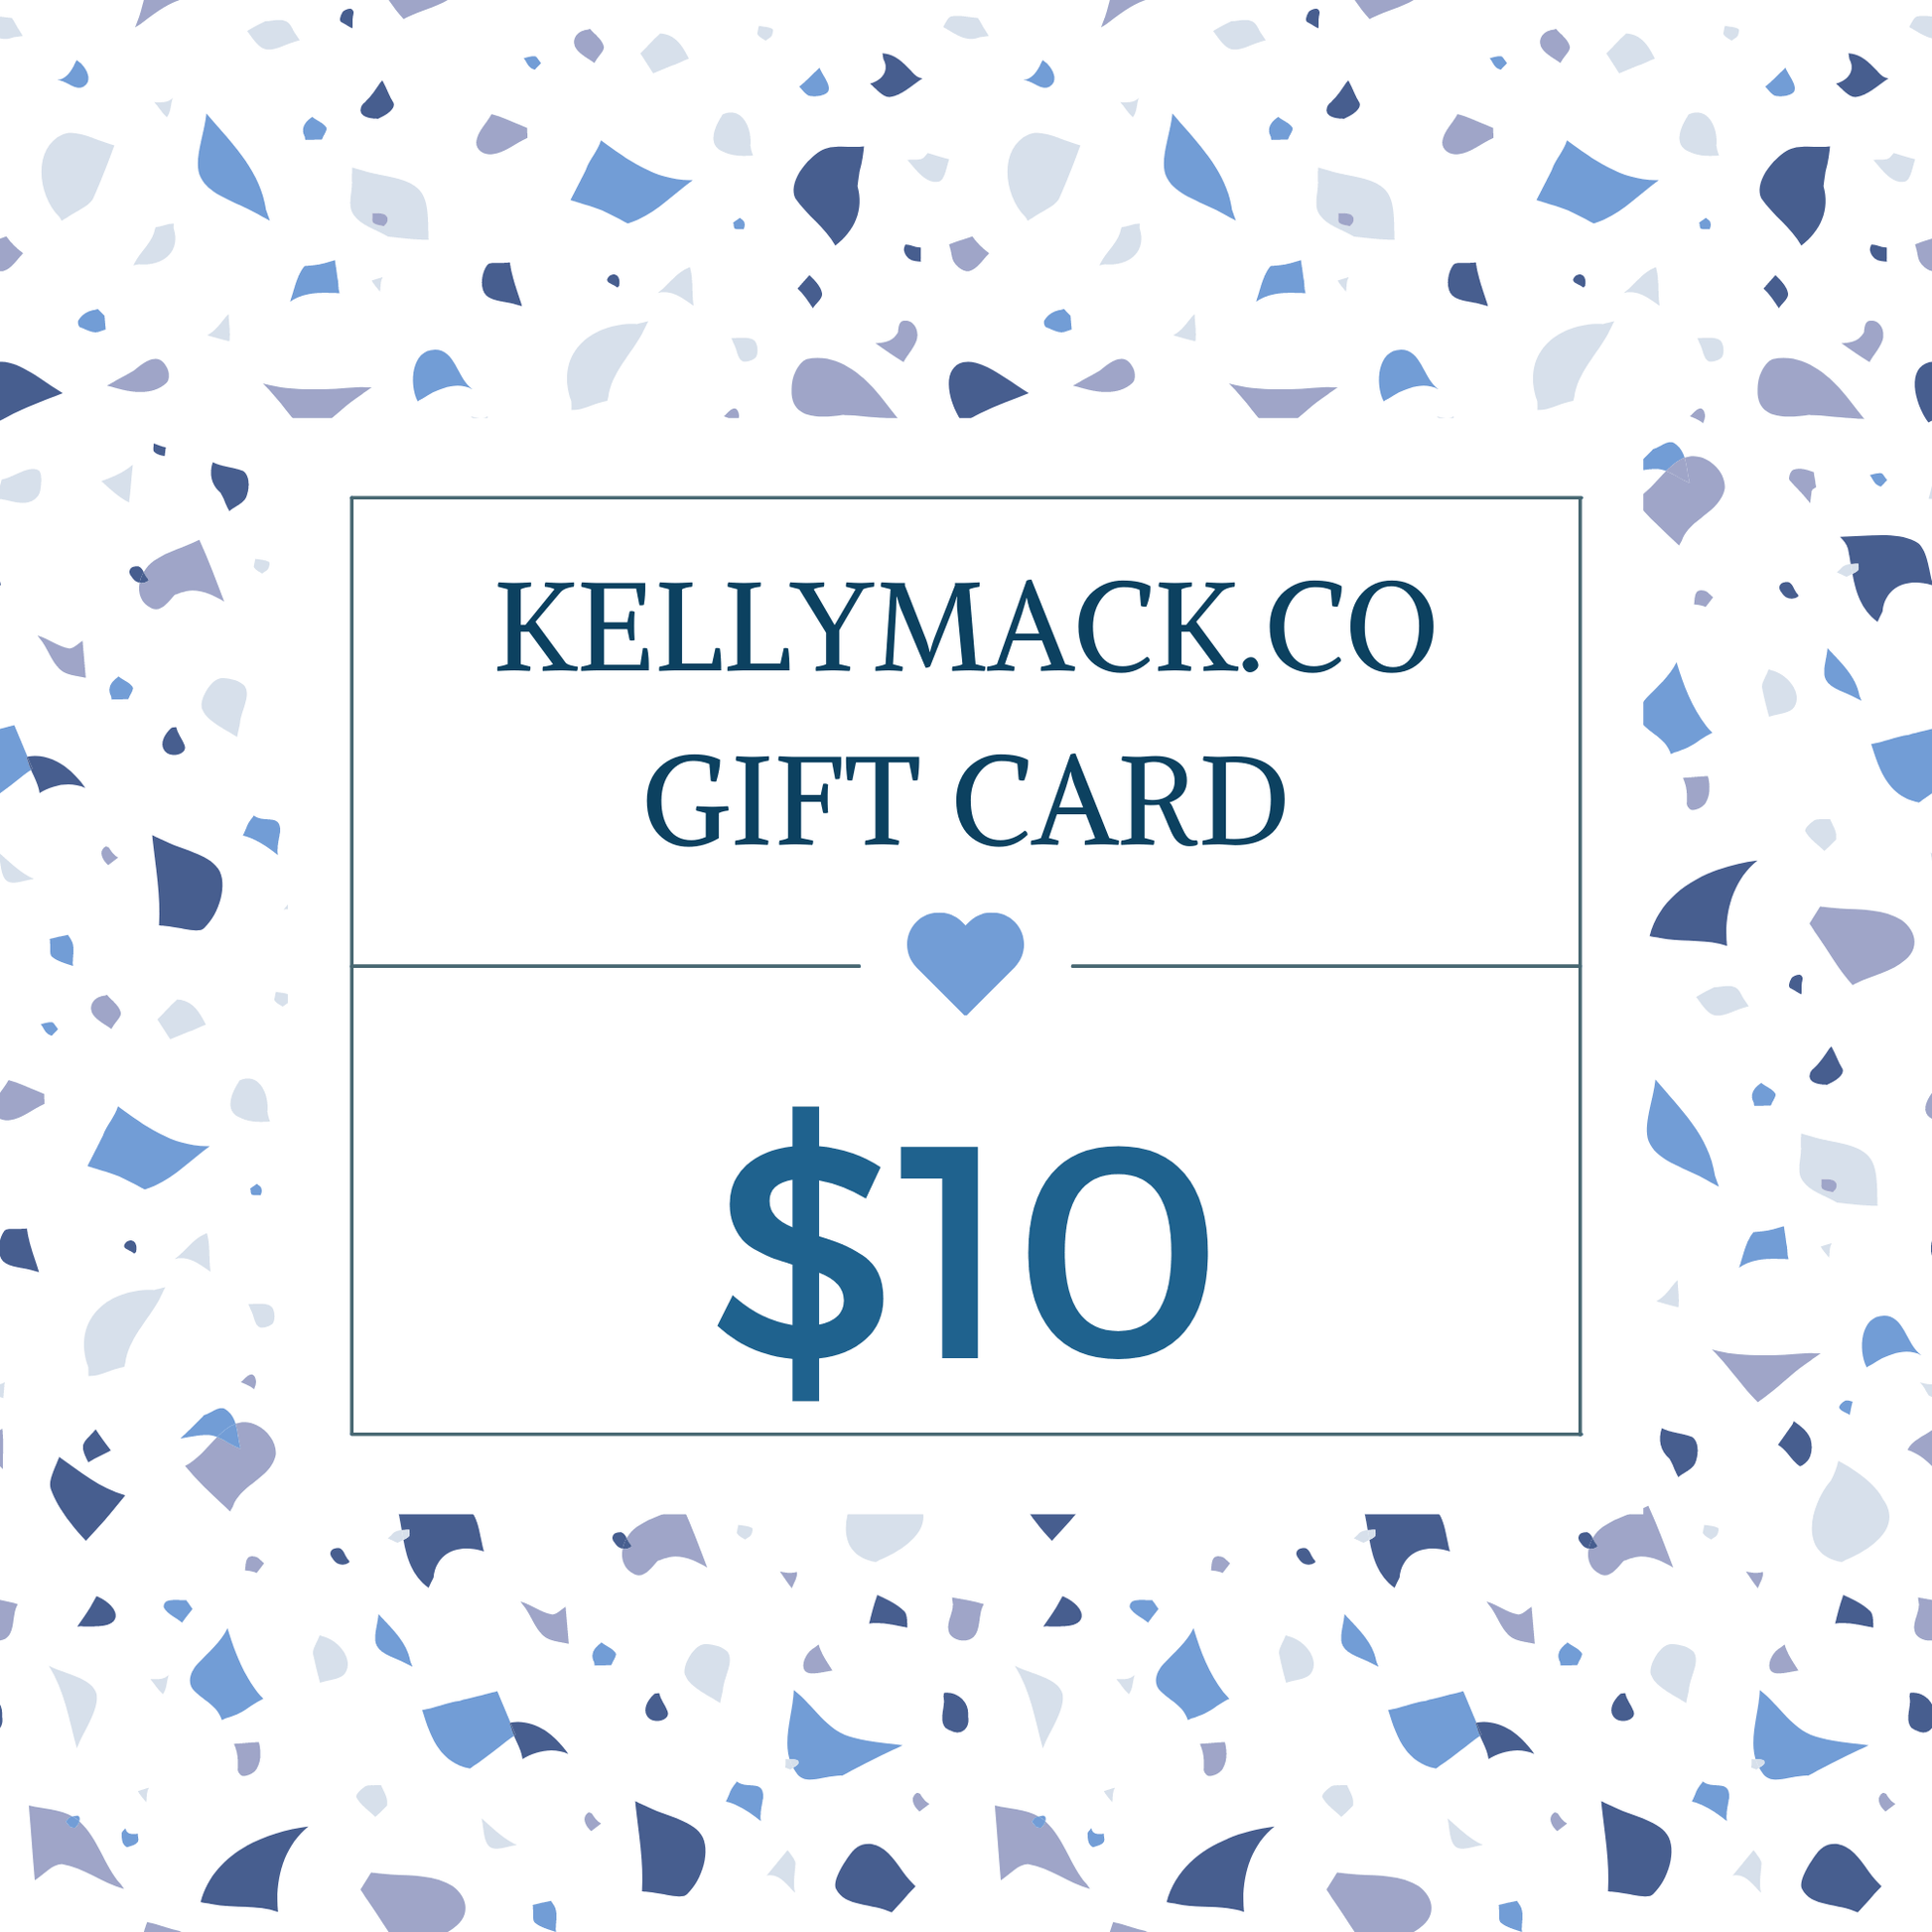 KellyMack.Co gift card $10.00 KellyMack.Co Gift Card